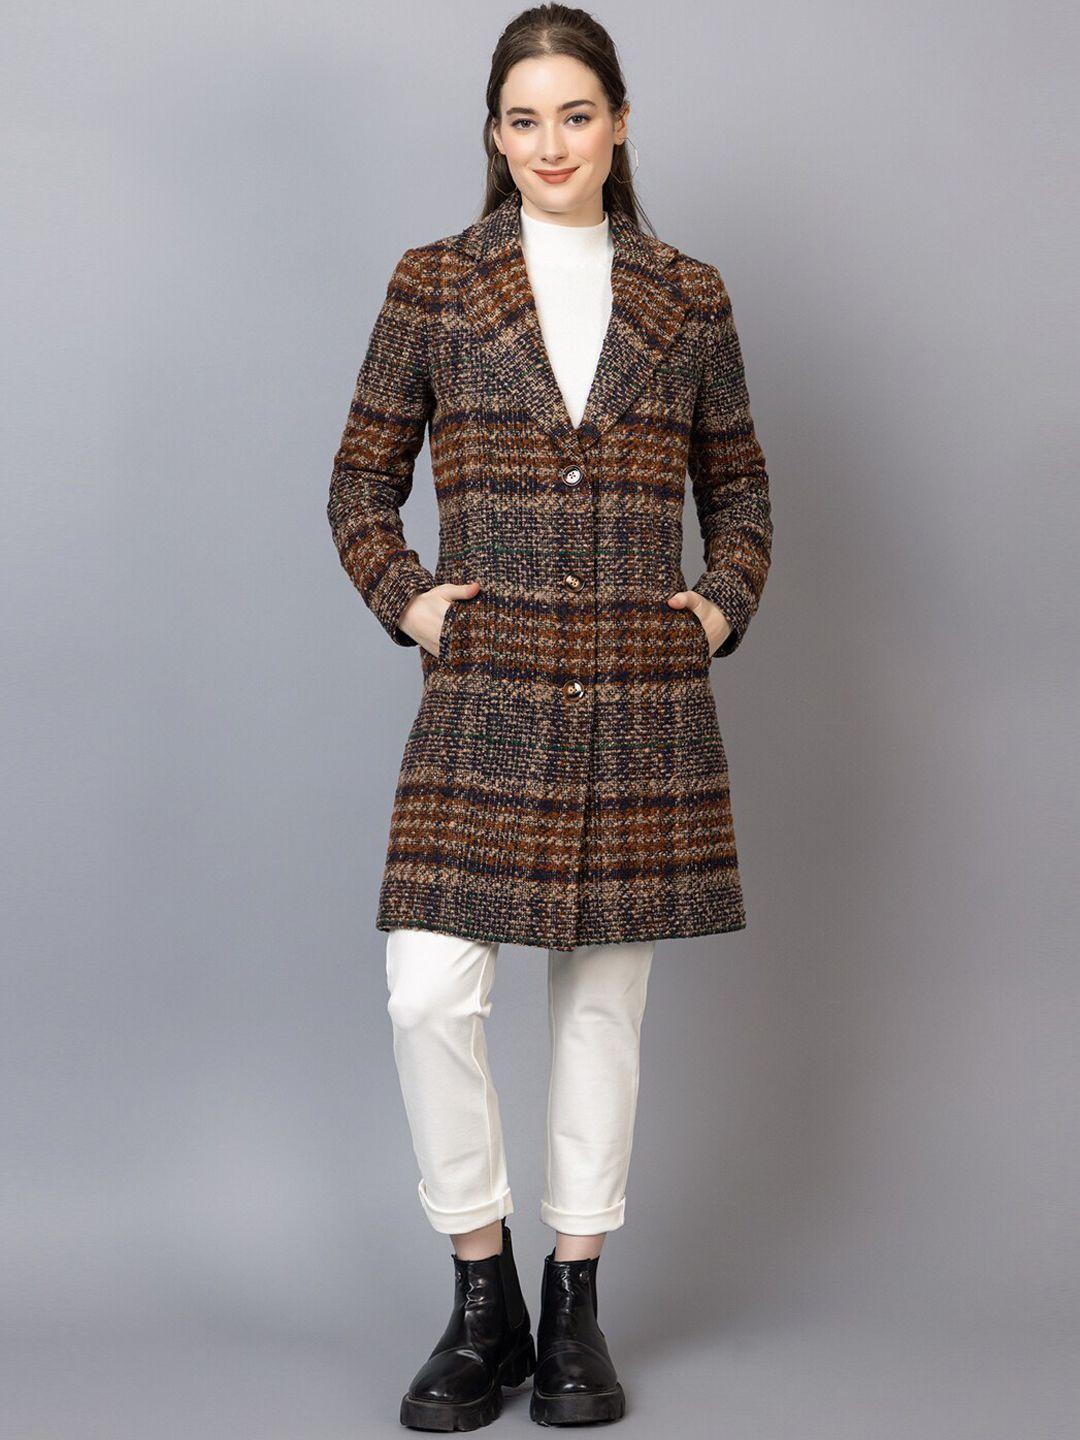 chkokko checked woollen winter wear longline overcoat